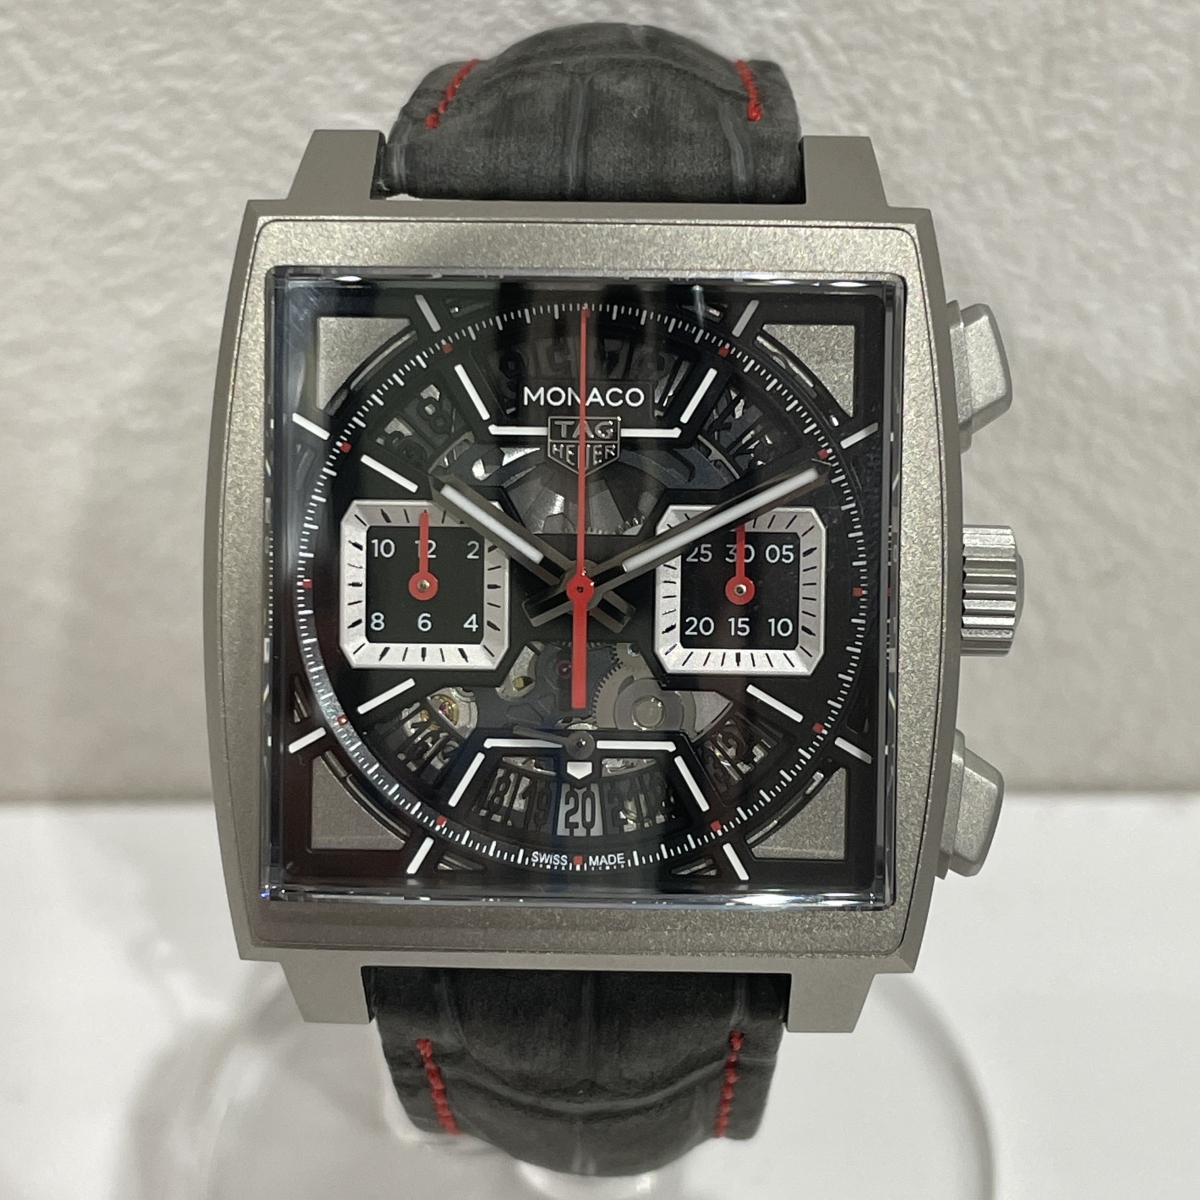 タグ・ホイヤーのモナコ クロノグラフ 自動巻き 腕時計 CBL2183の買取実績です。